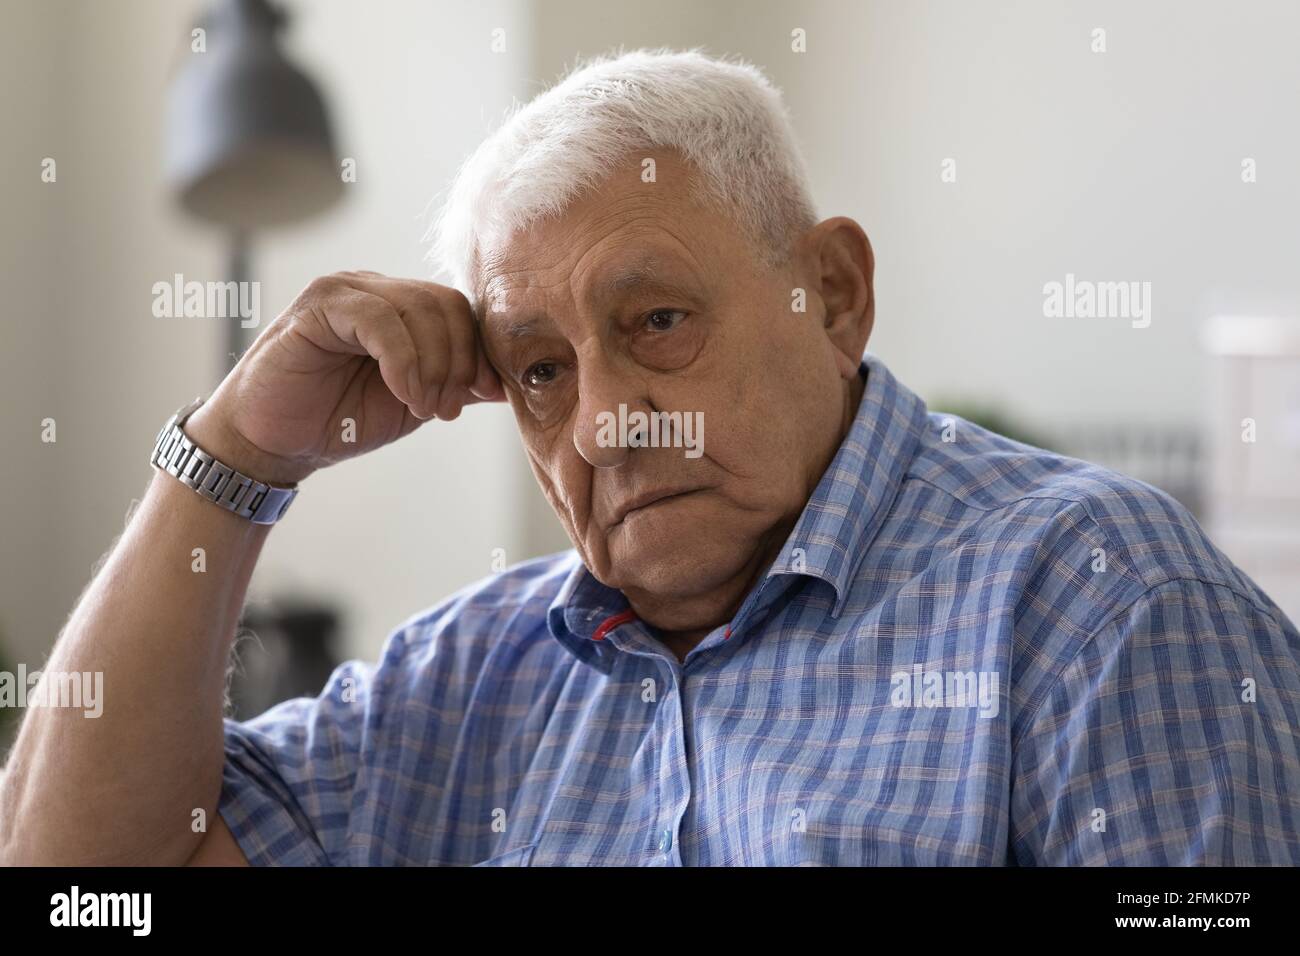 Malestar anciano hombre se siente desesperado cansado tener problemas de salud mental Foto de stock